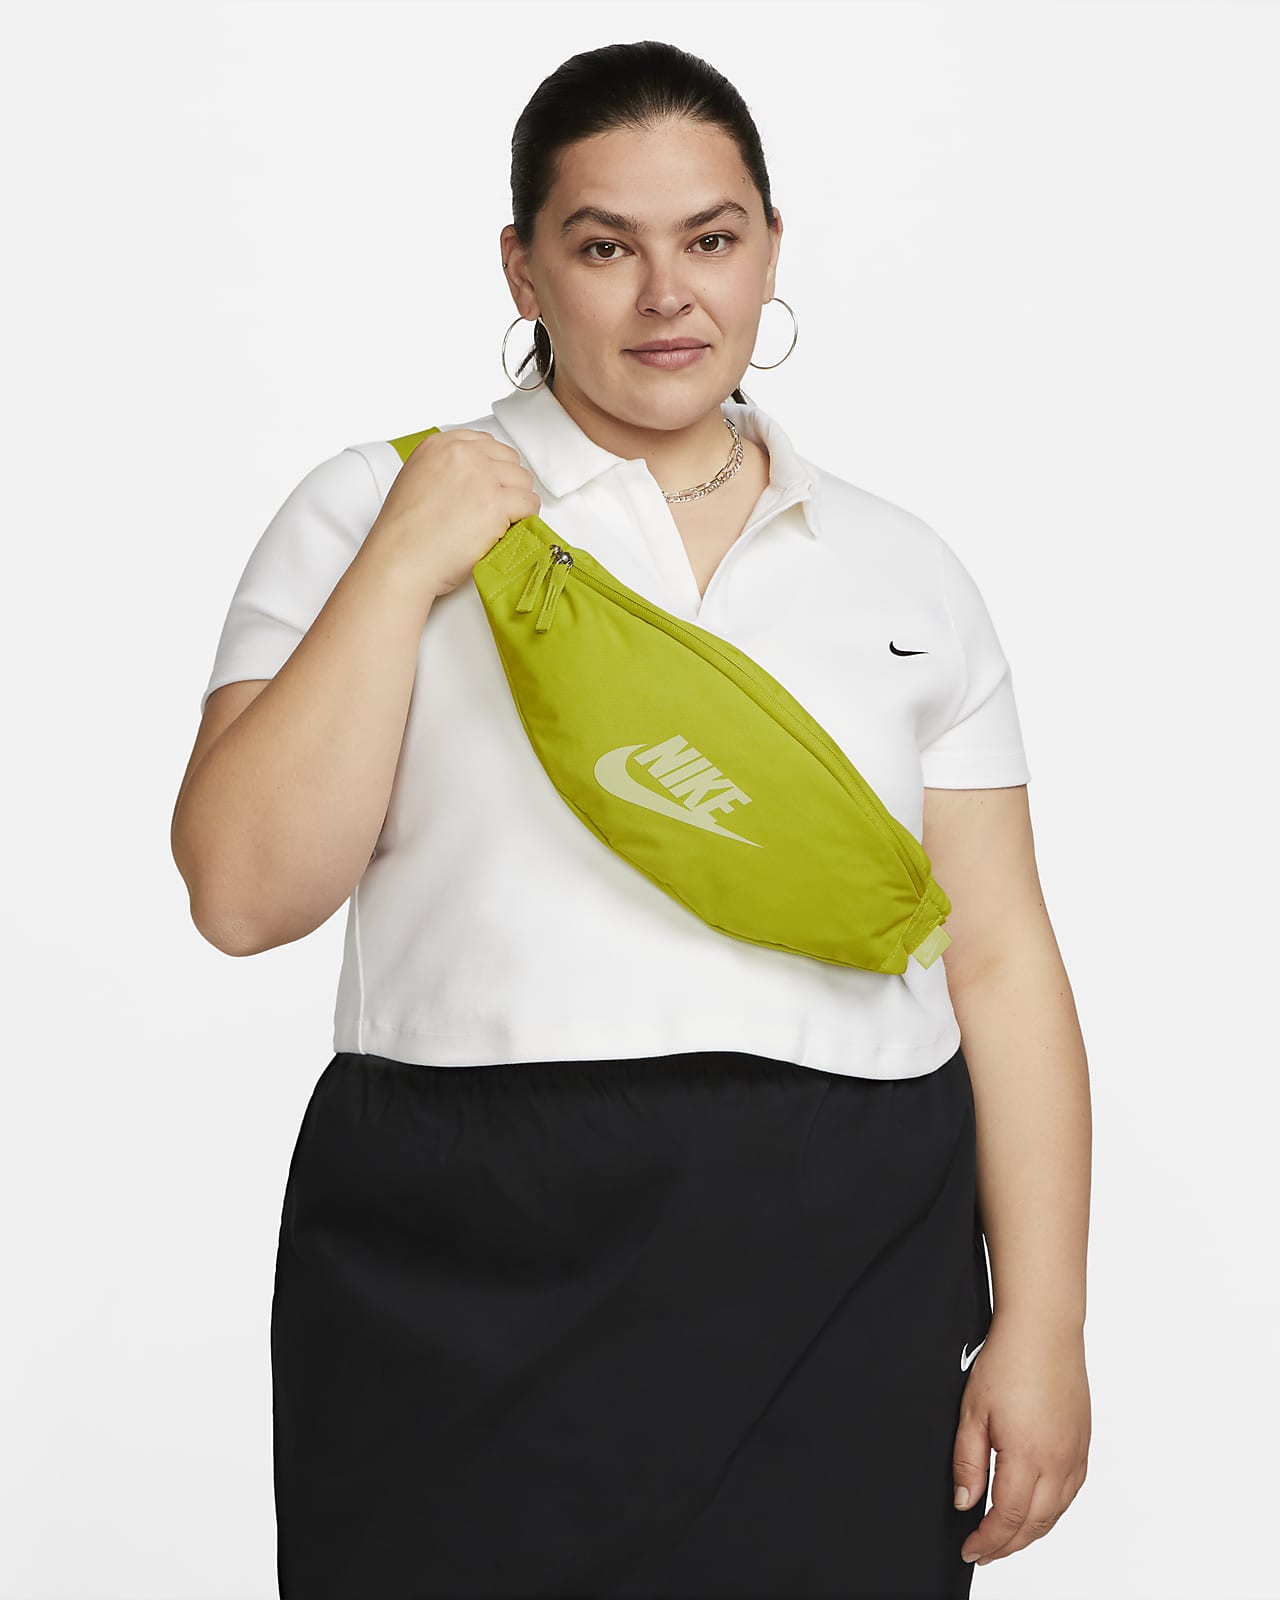 Nike Heritage 腰包 (3 公升)